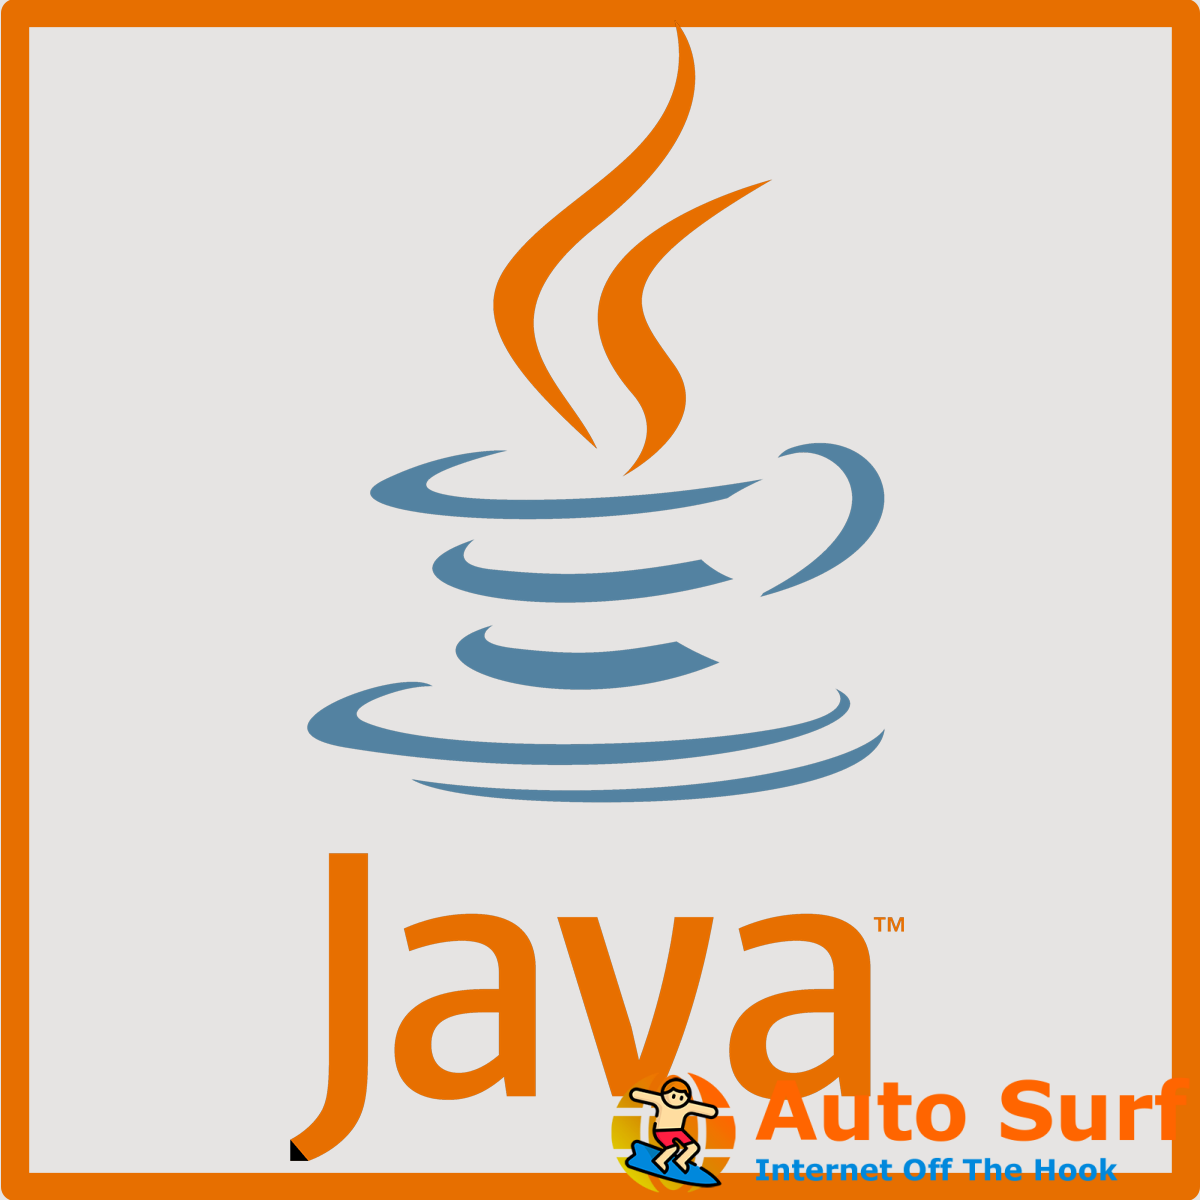 REVISIÓN: No se puede iniciar el error del instalador de actualización de Java en Windows